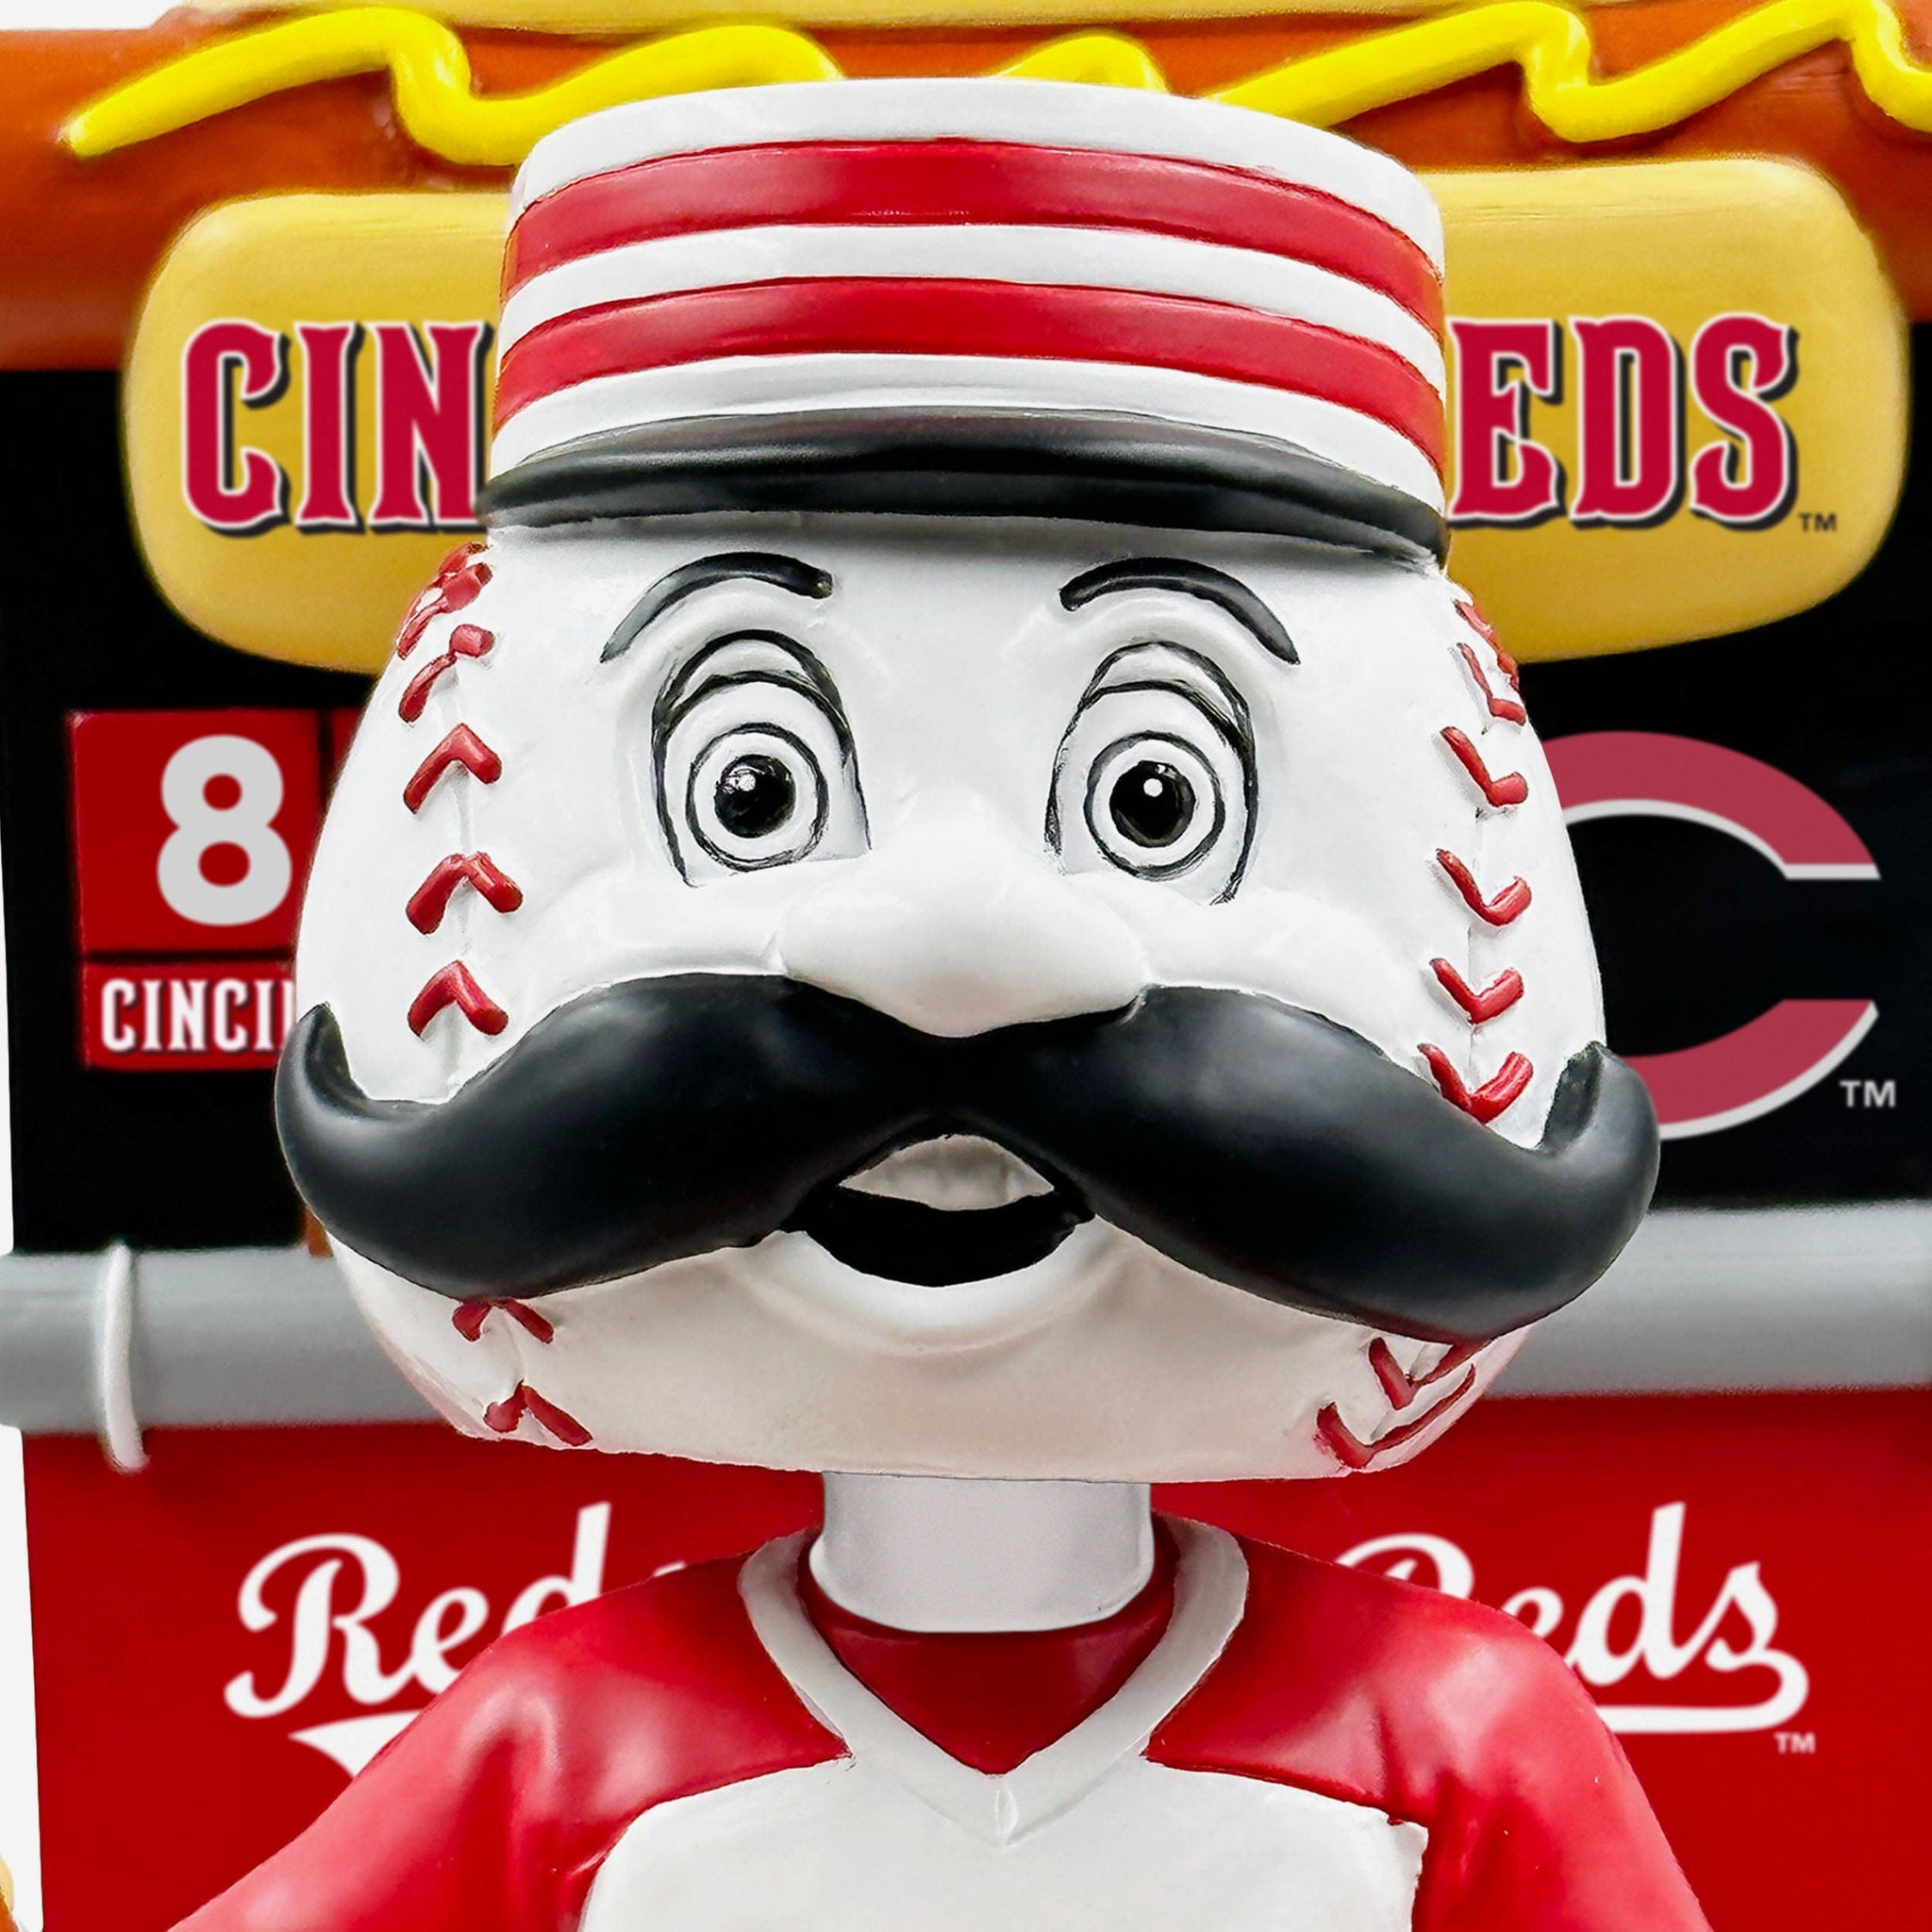 Mr. Redlegs Cincinnati Reds 3 ft Mascot Bobblehead Officially Licensed by MLB